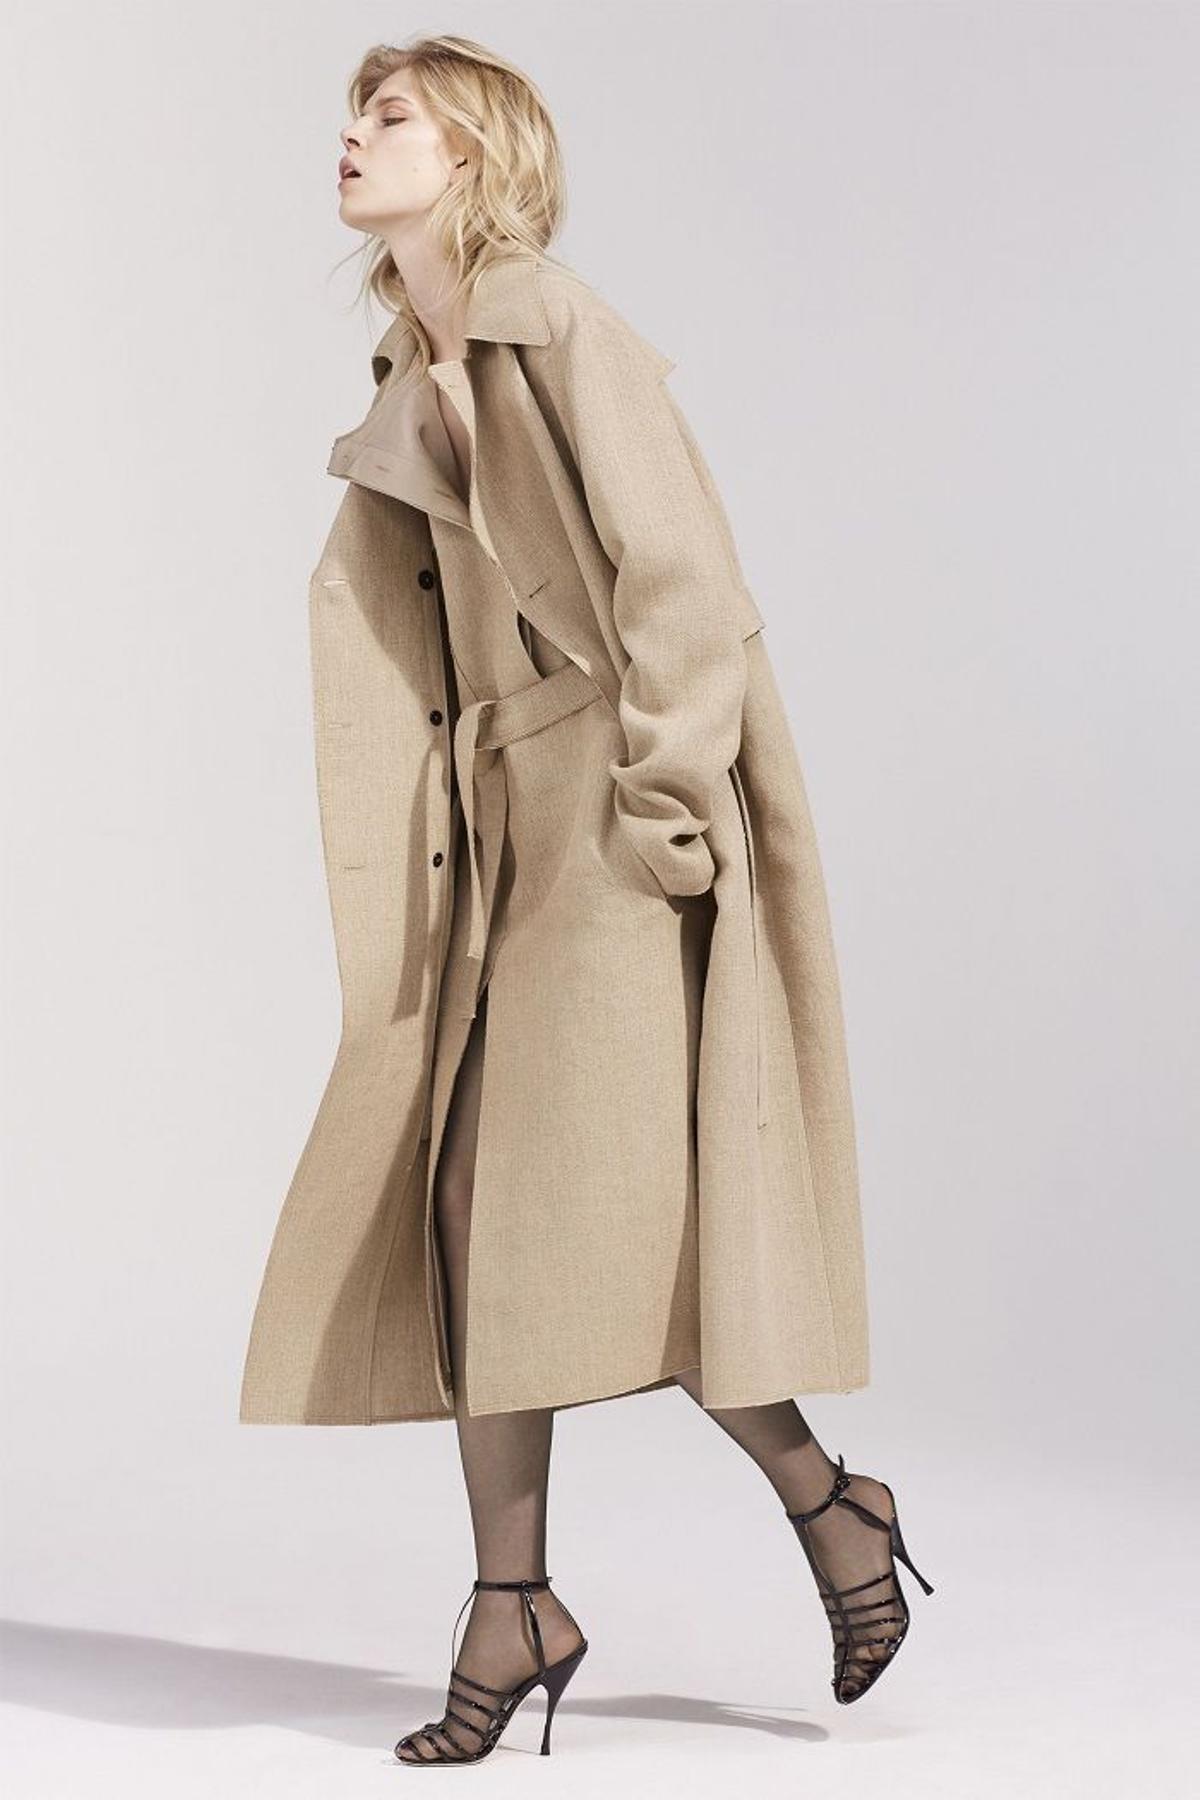 Nina Ricci colección primavera 2016, abrigo tipo trench